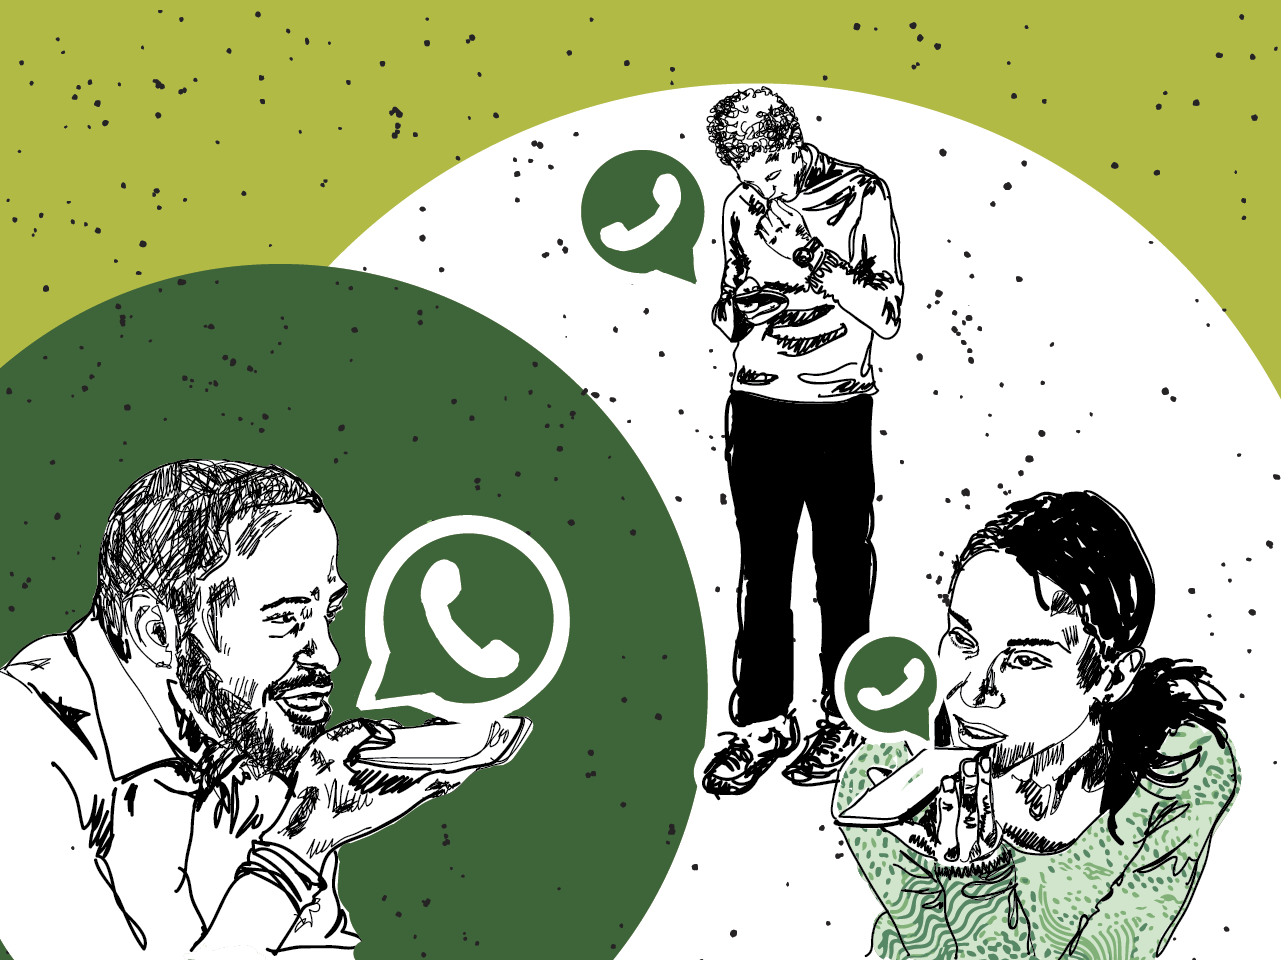 WhatsApp Web ganha editor integrado para figurinhas; saiba como fazer